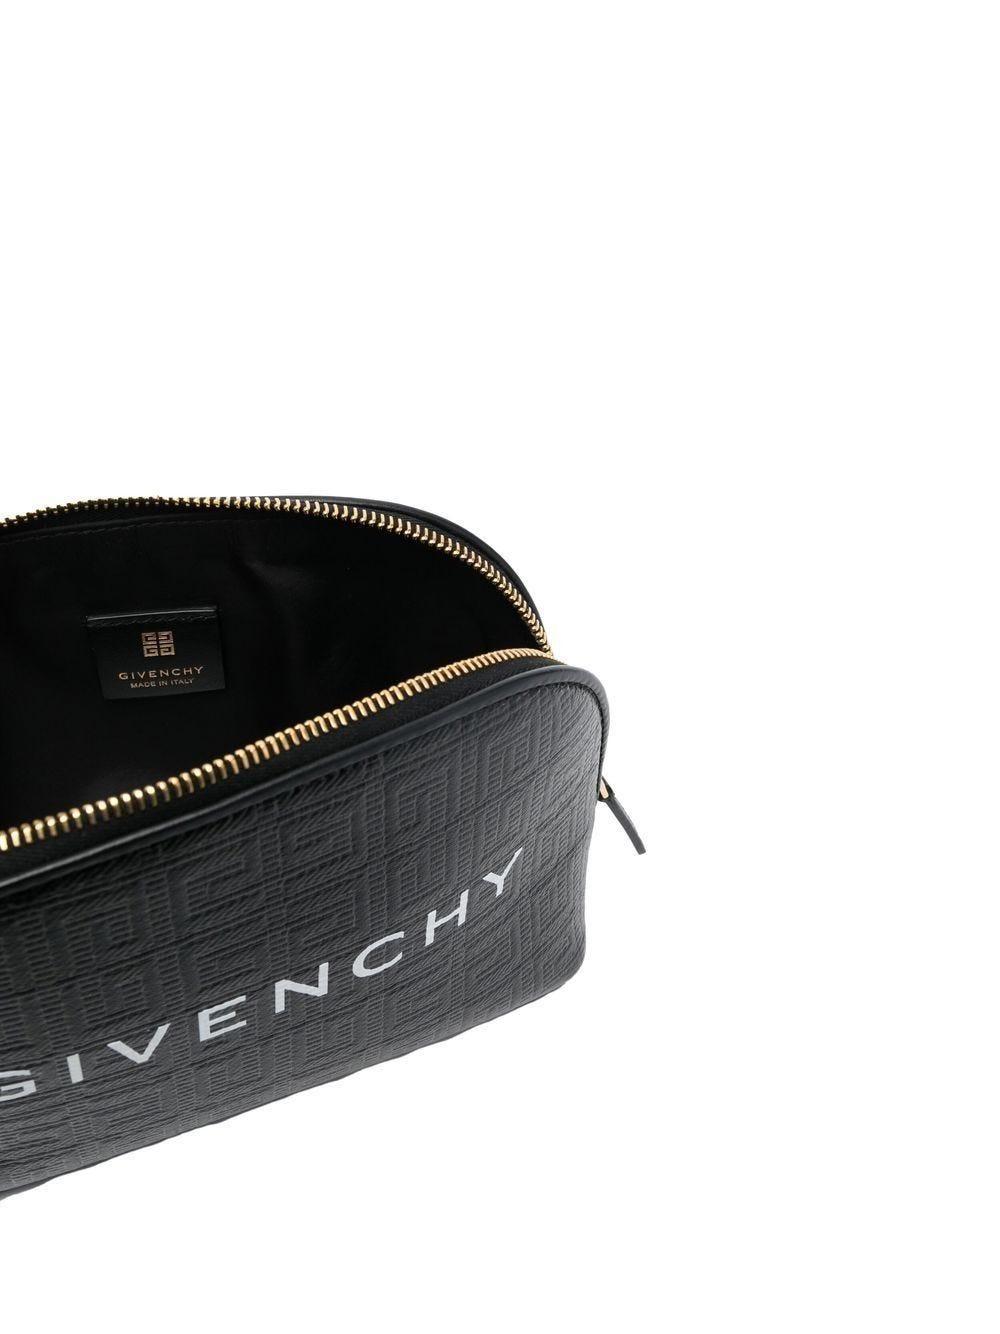 Givenchy 'g-essentials' Wash Bag in Black | Lyst